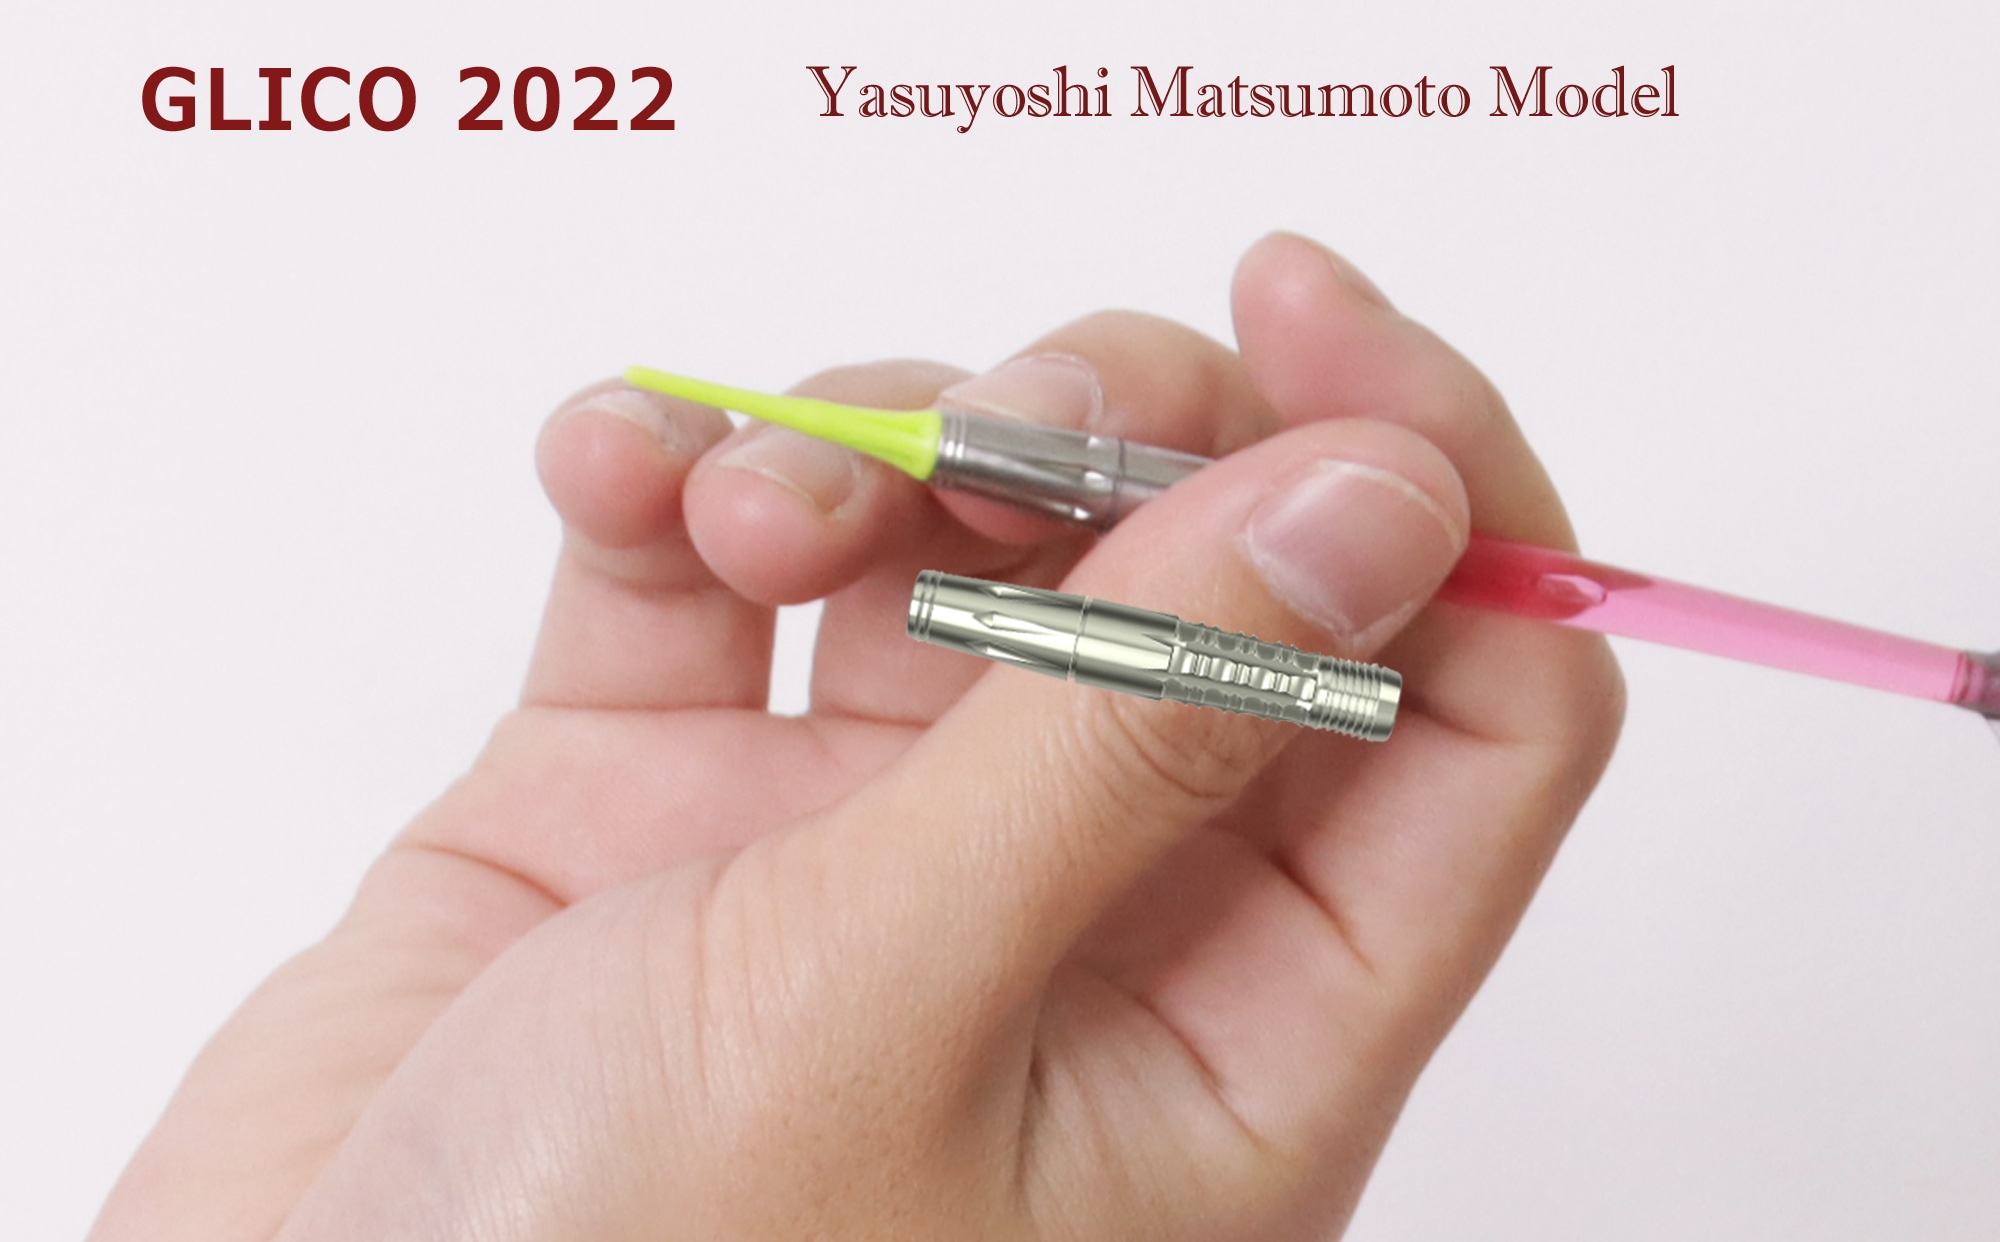 松本康寿モデル GLICO 2022図面